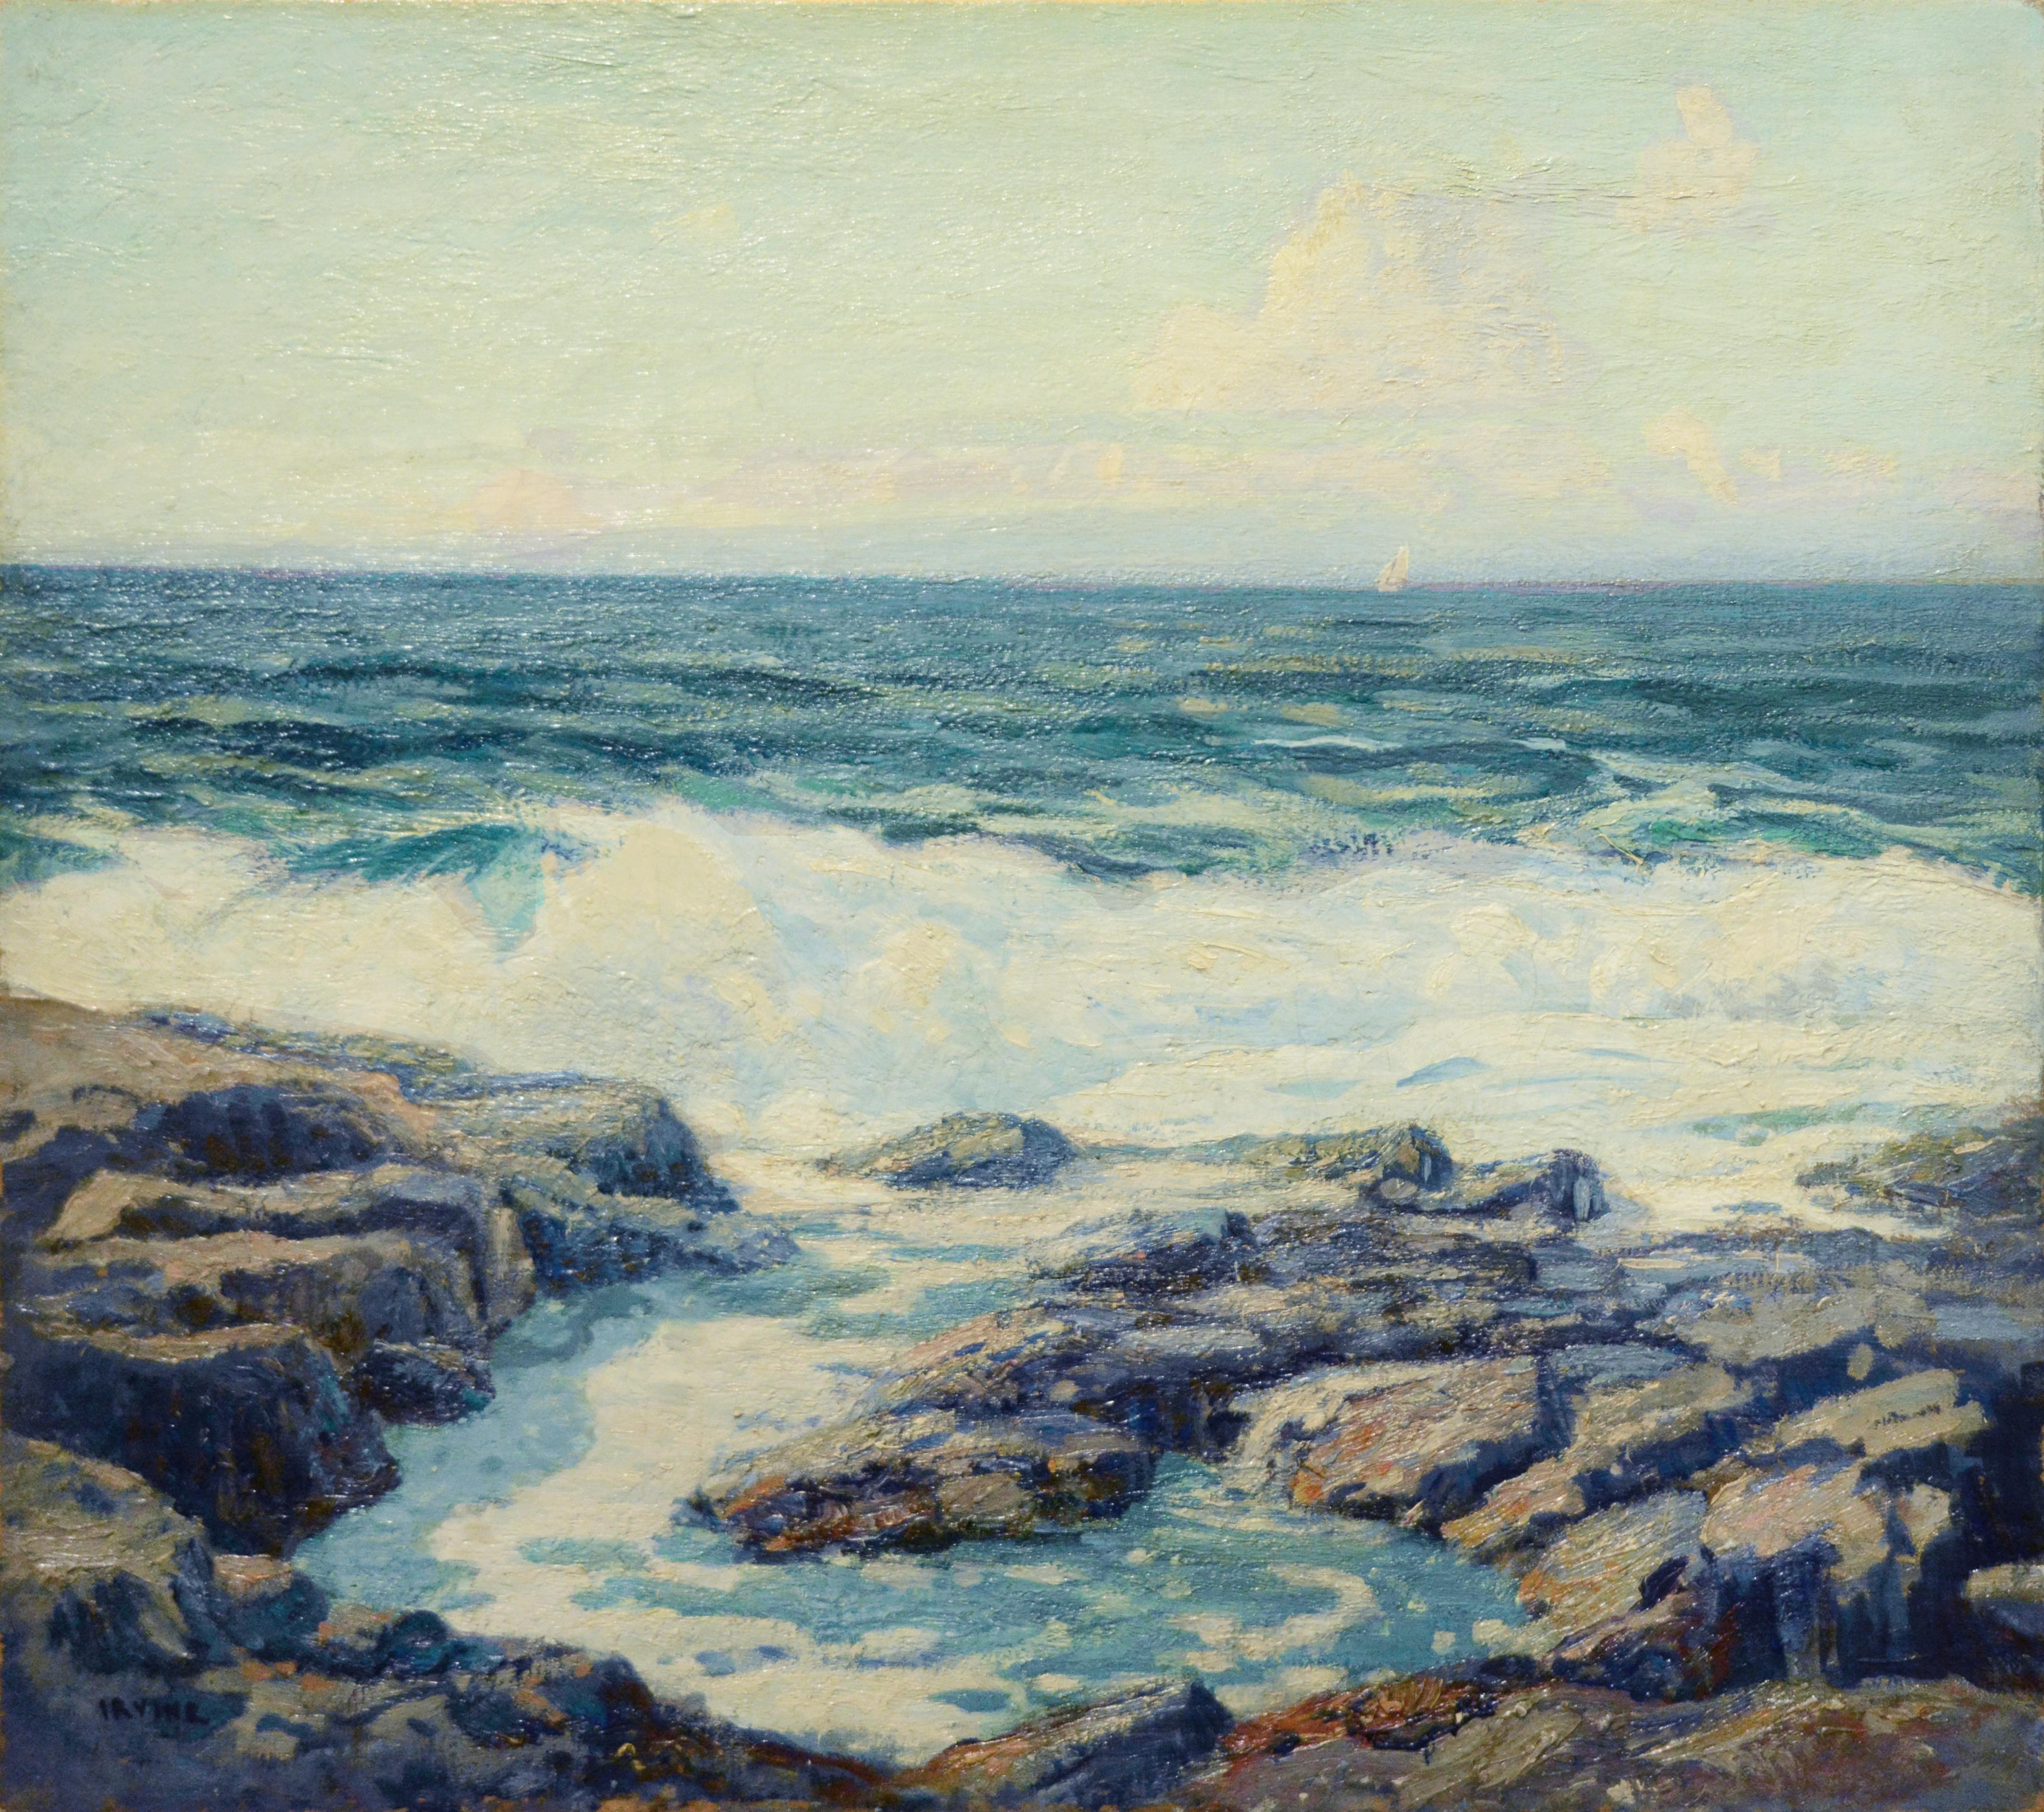 Landscape Painting Wilson Henry Irvine - Les vagues de printemps, île de Monhegan 